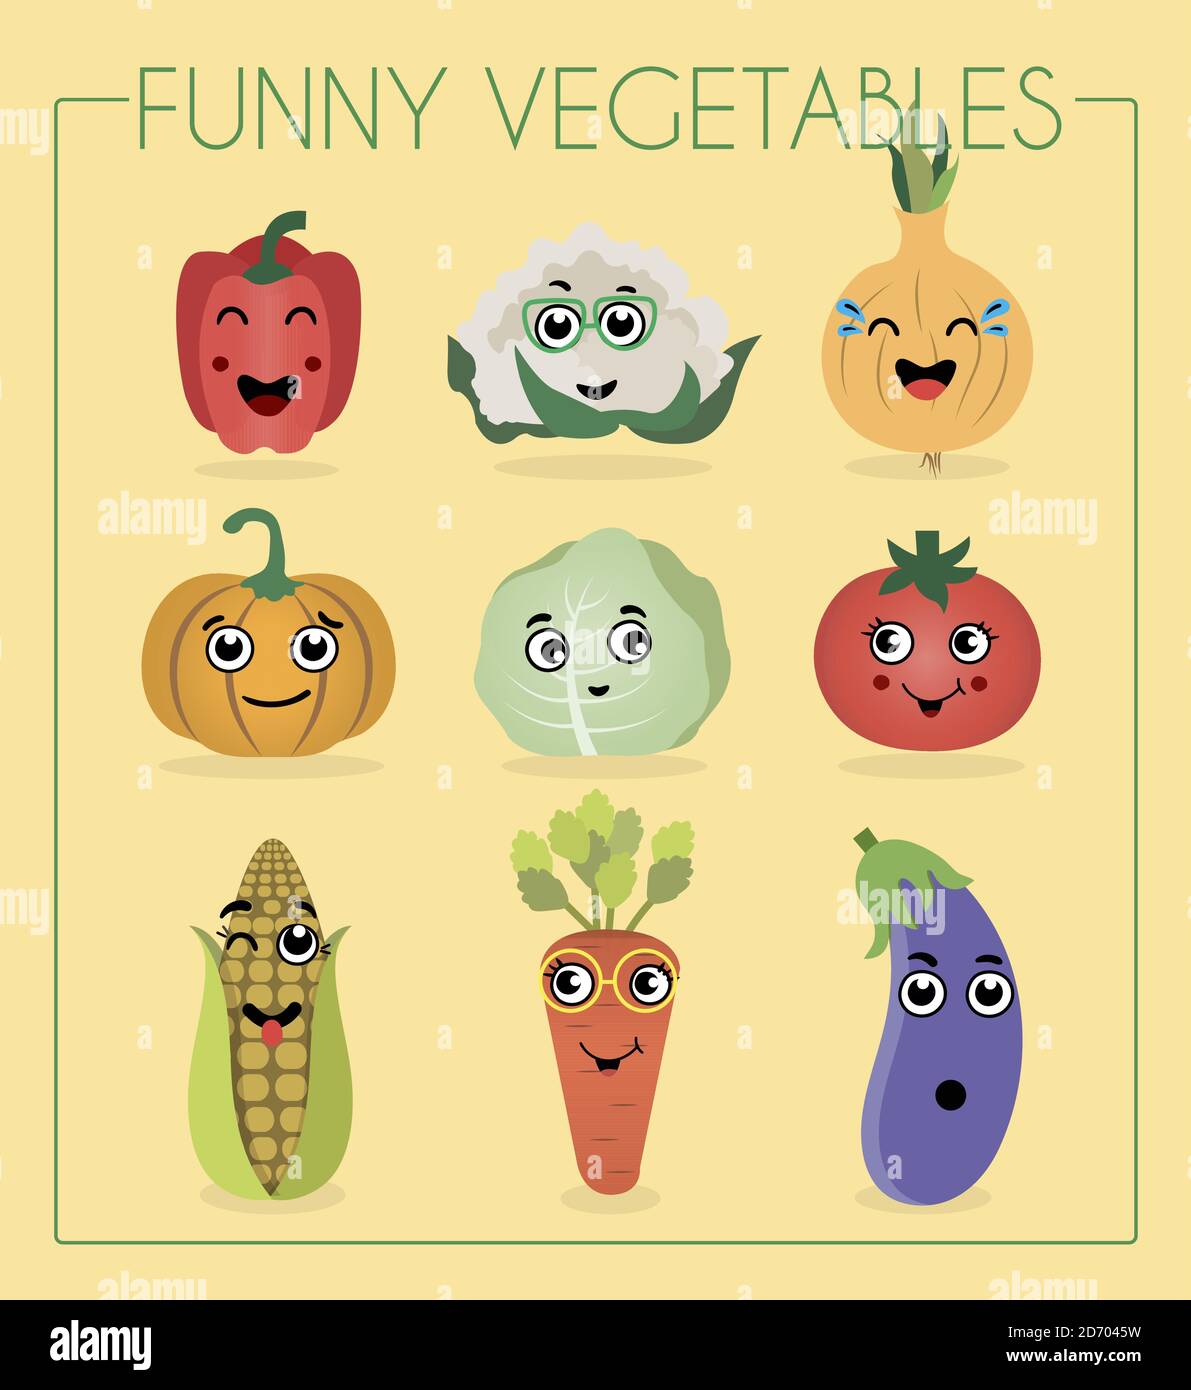 Amo le verdure. Divertente personaggio cartoon. Illustrazione vettoriale. Un set di verdure piatte e frutta con facce di cartone animato. Personaggi divertenti dal cibo. Emozioni diverse risate, imbarazzo, sorpresa su cocomero, pera, pepe, zucca, cavolo, pomodoro, mais, carote e melanzane. Illustrazione Vettoriale